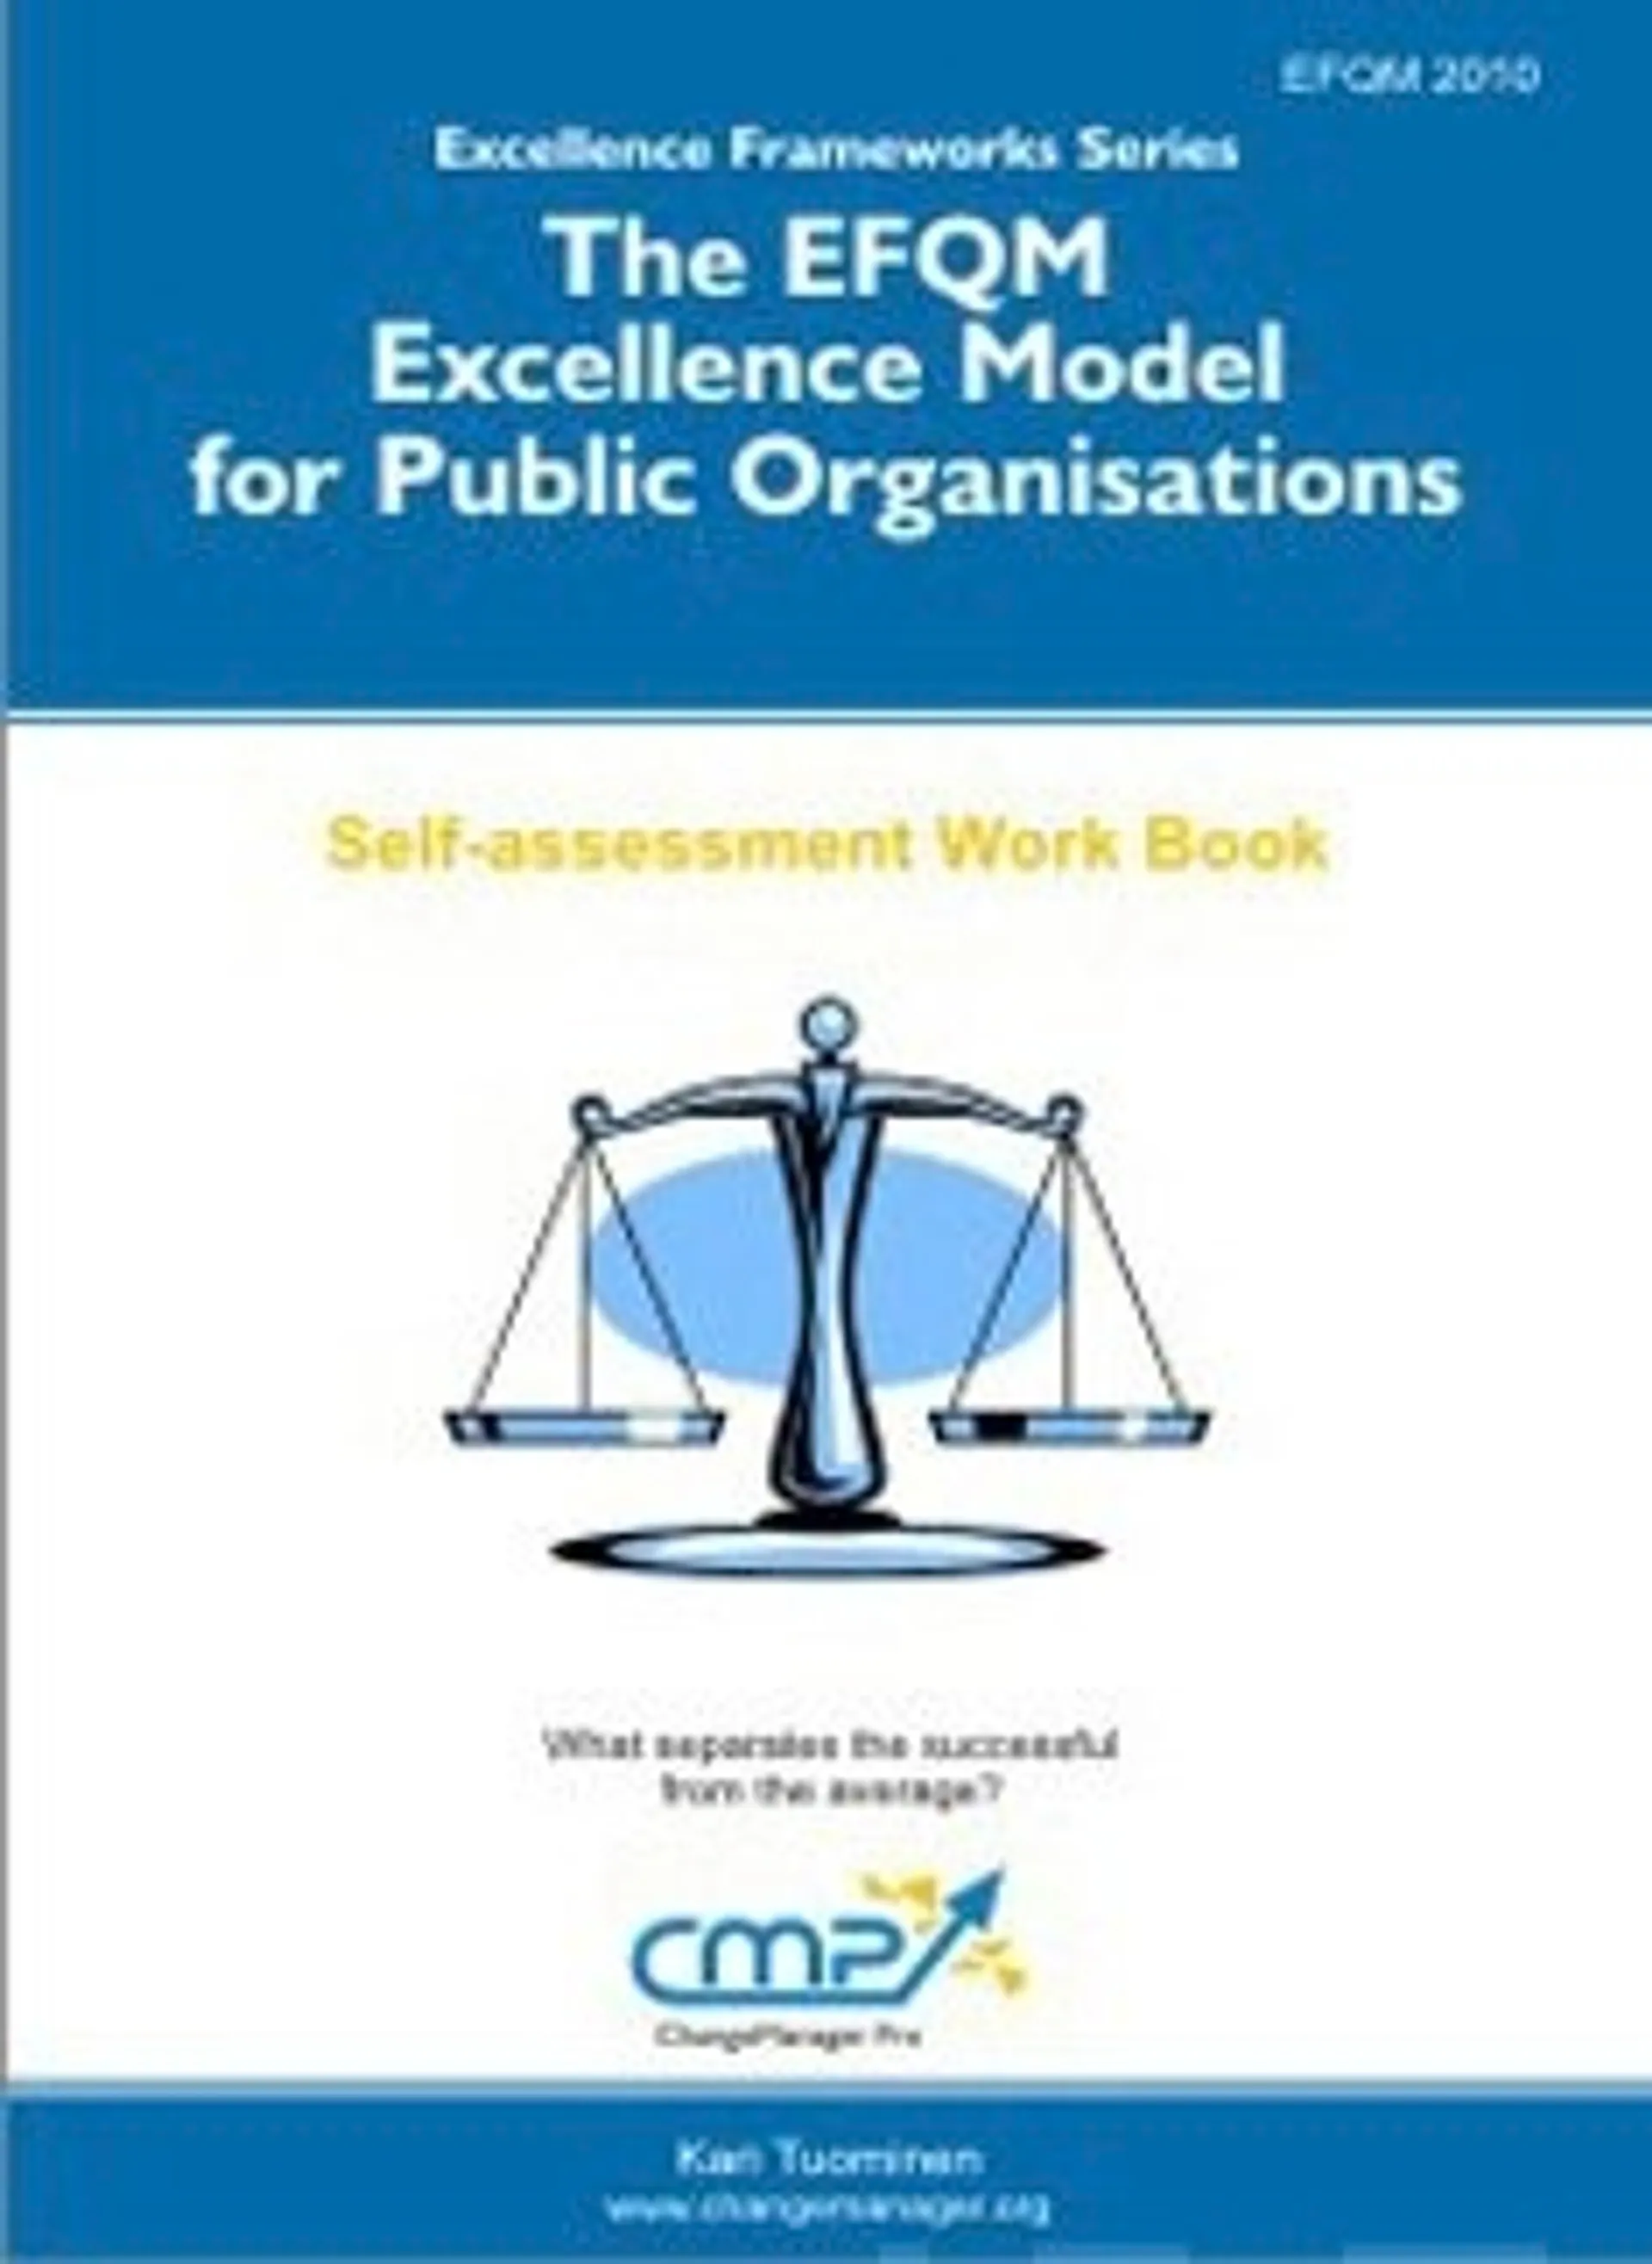 The EFQM Excellence Model for Public Organisations - EFQM 2010